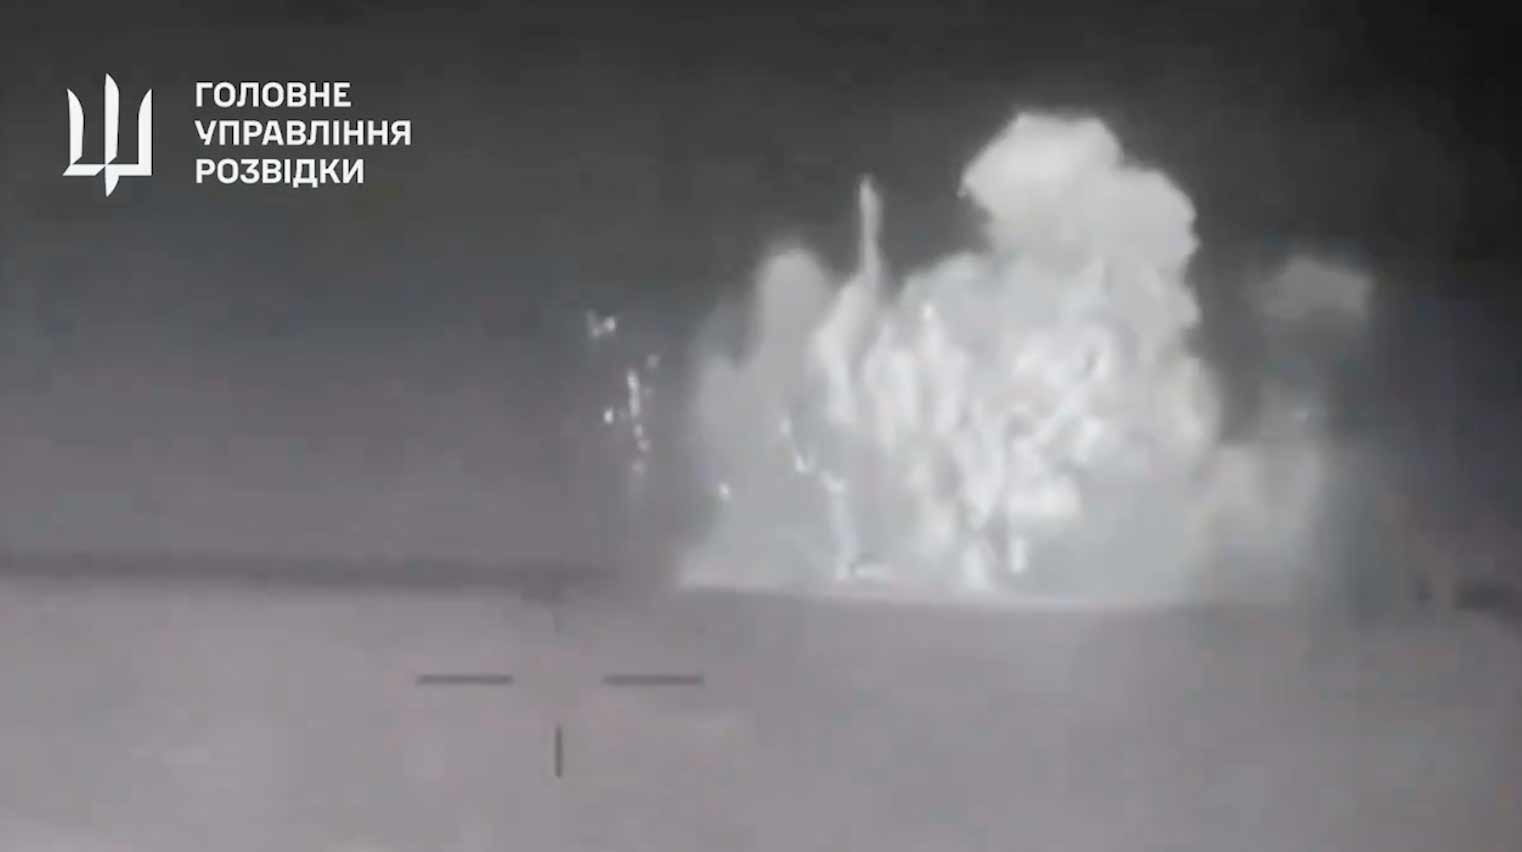 Video baru menunjukkan ledakan yang menenggelamkan kapal Rusia Sergey Kotov. Reproduksi Twitter @wartranslated